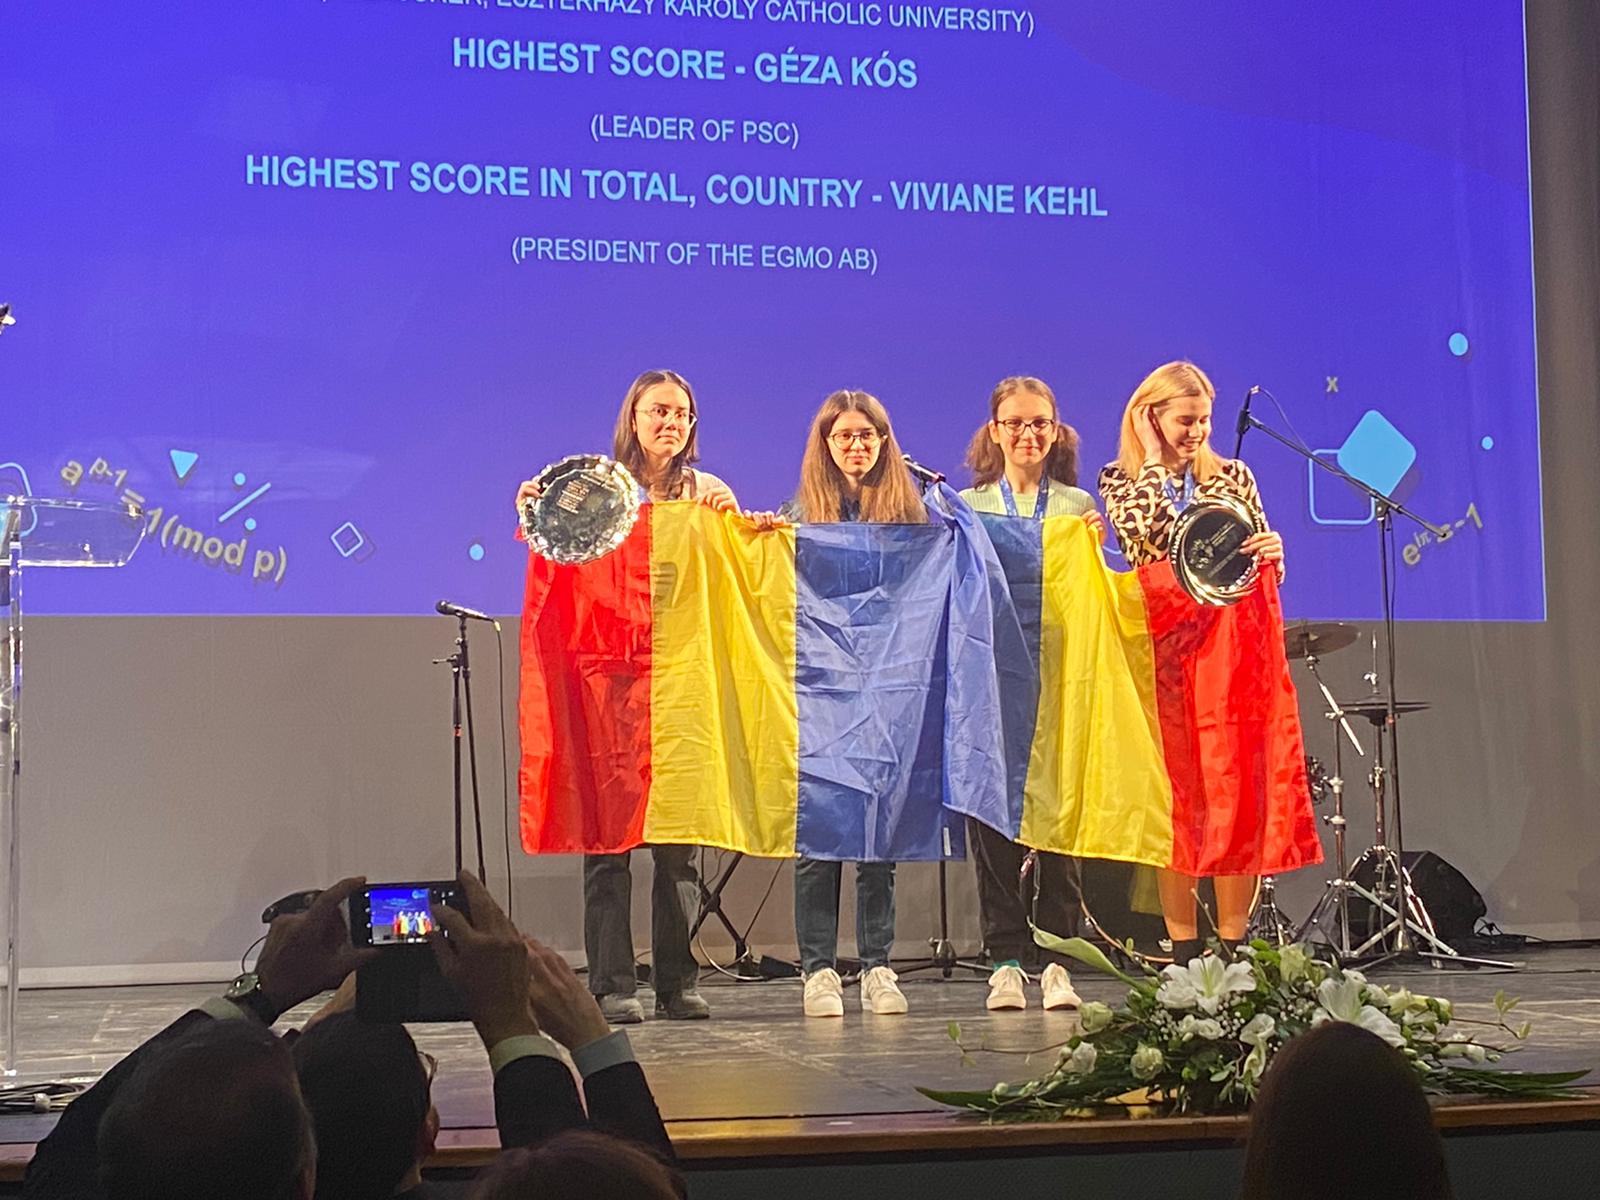 Lotul de la olimpiada europeana de matematica pentru fete